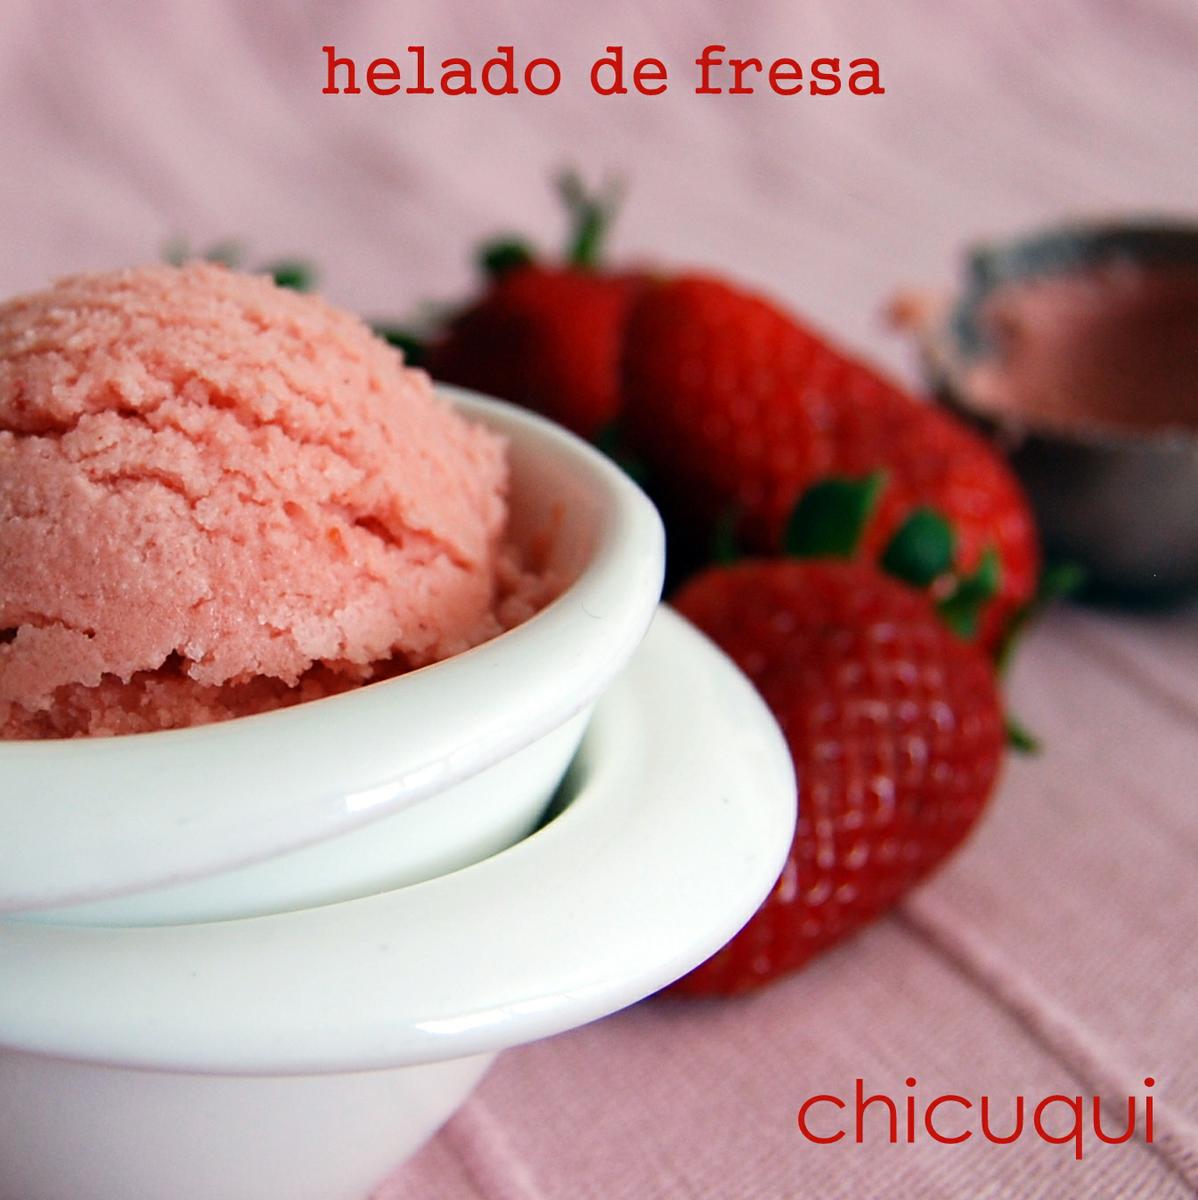 Receta de helado de fresa en galletas decoradas chicuqui.com